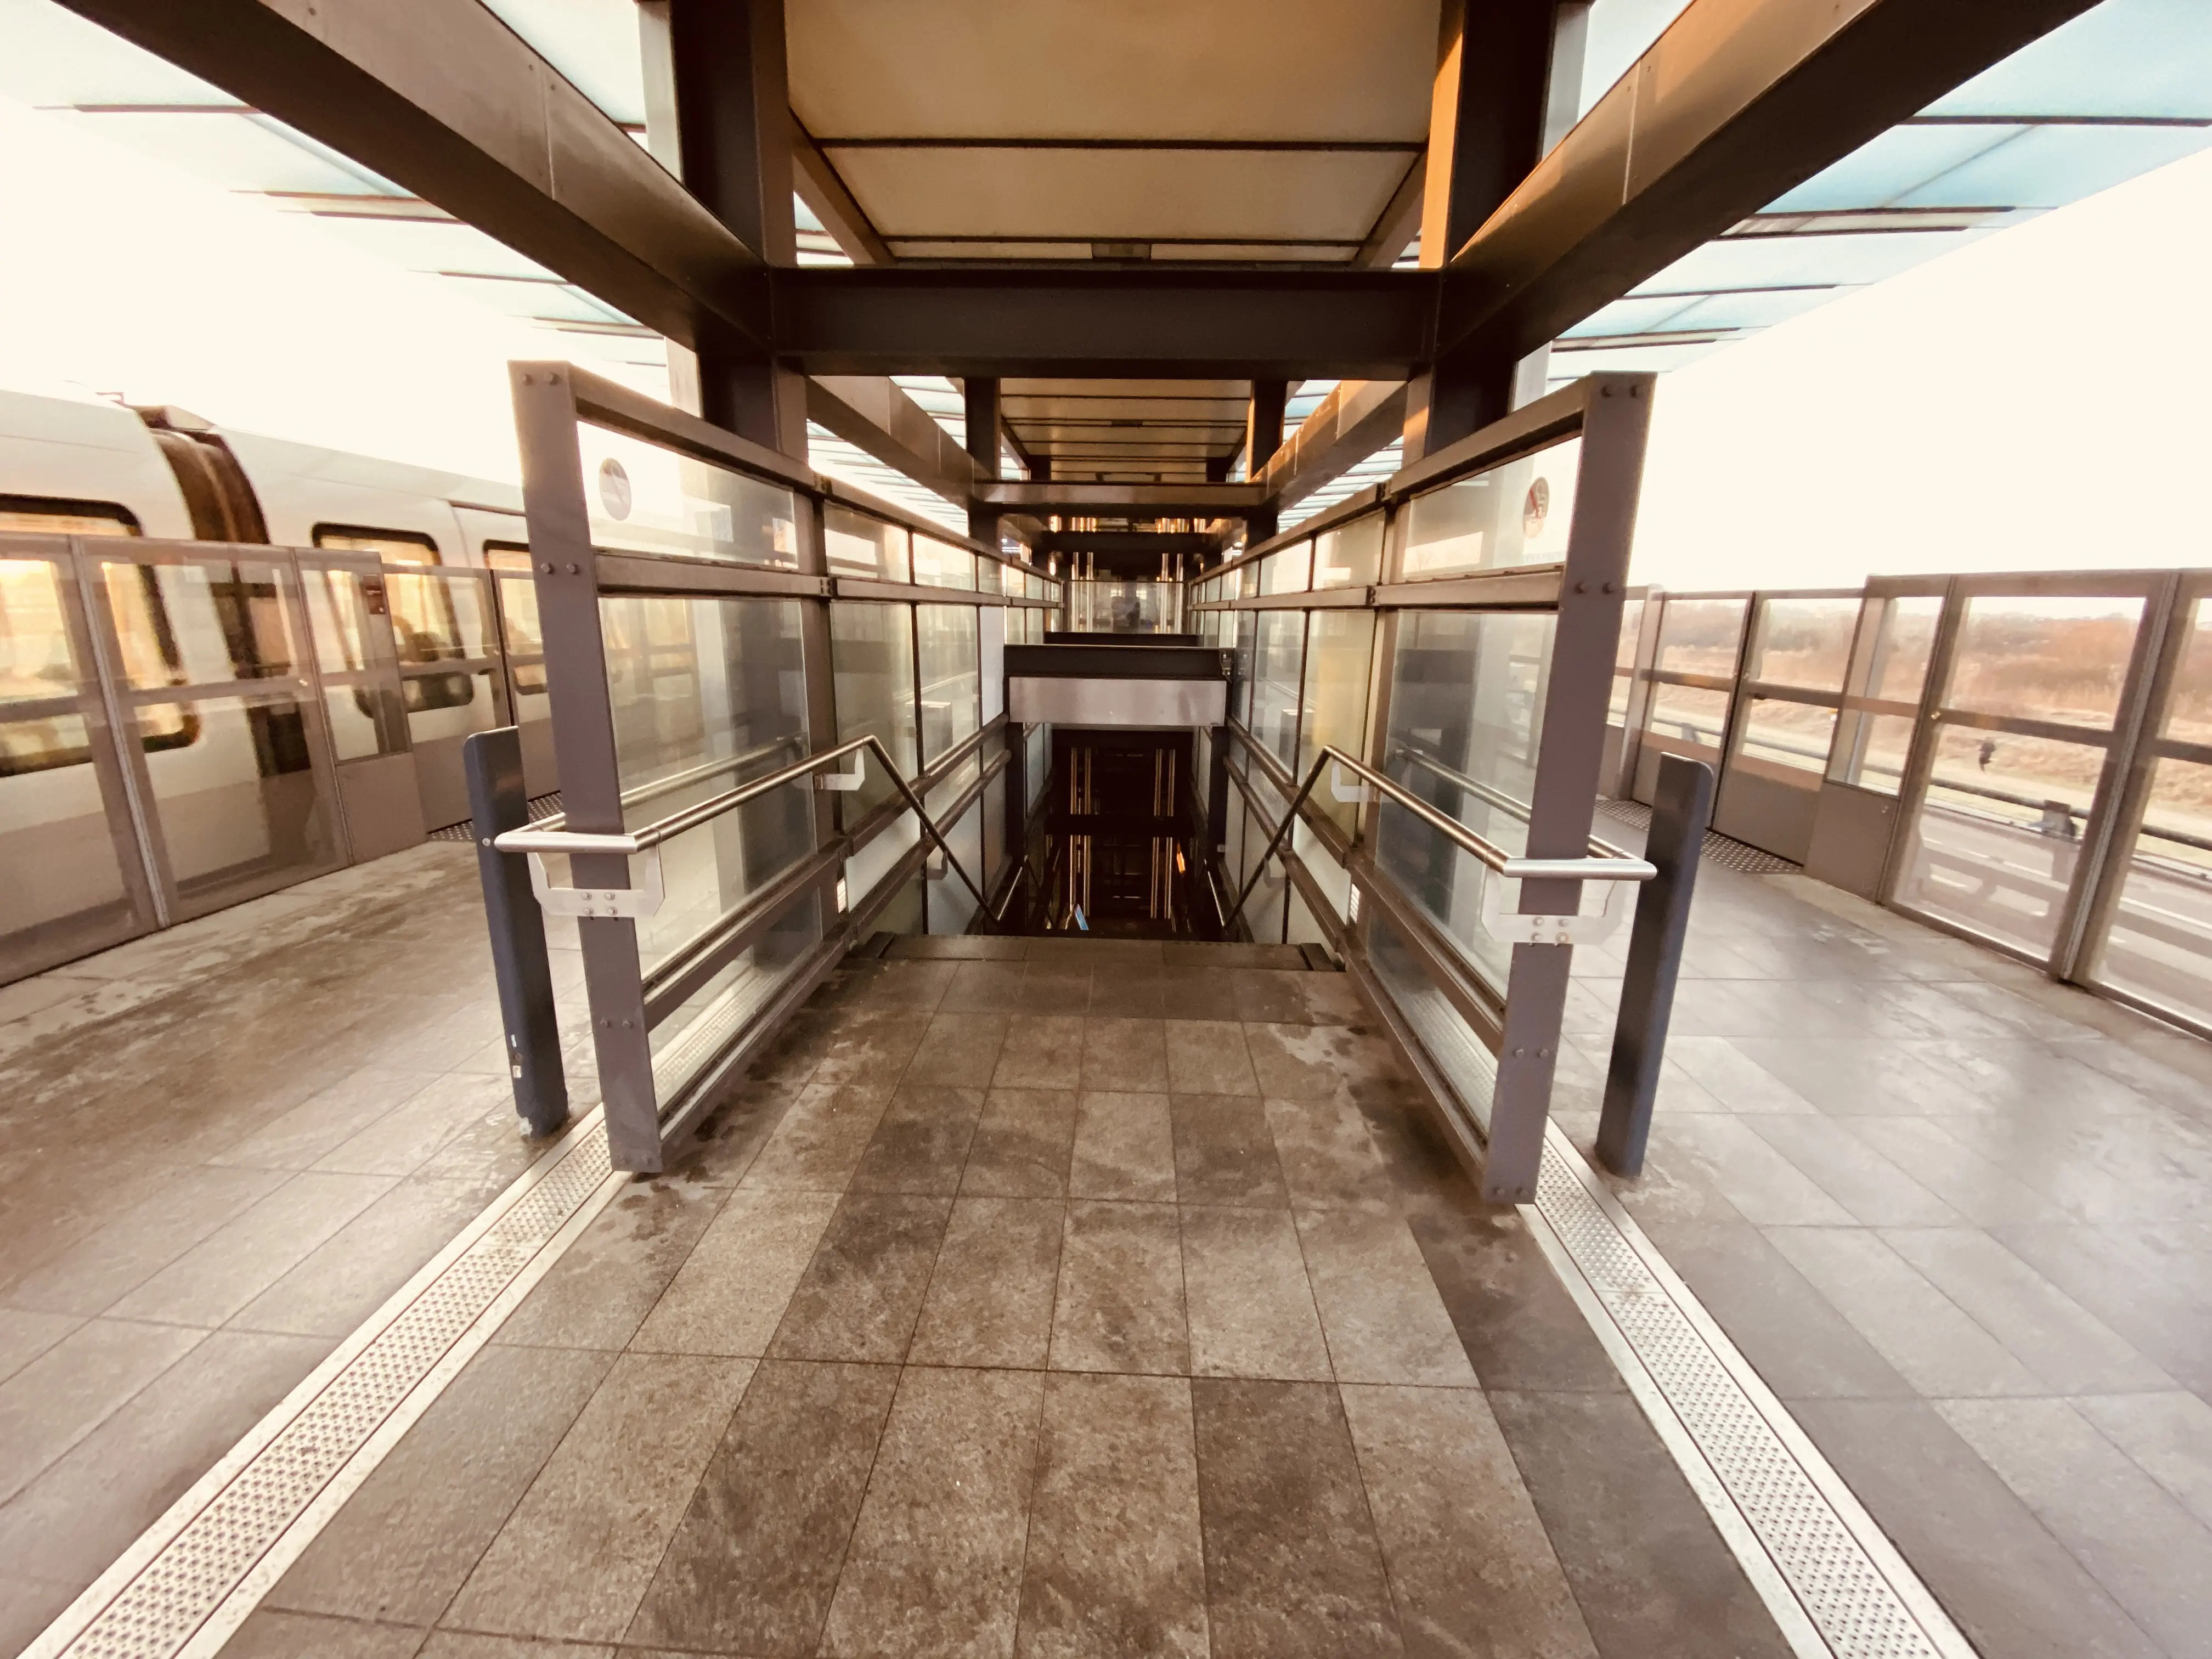 Billede af Sundby Metrostation.